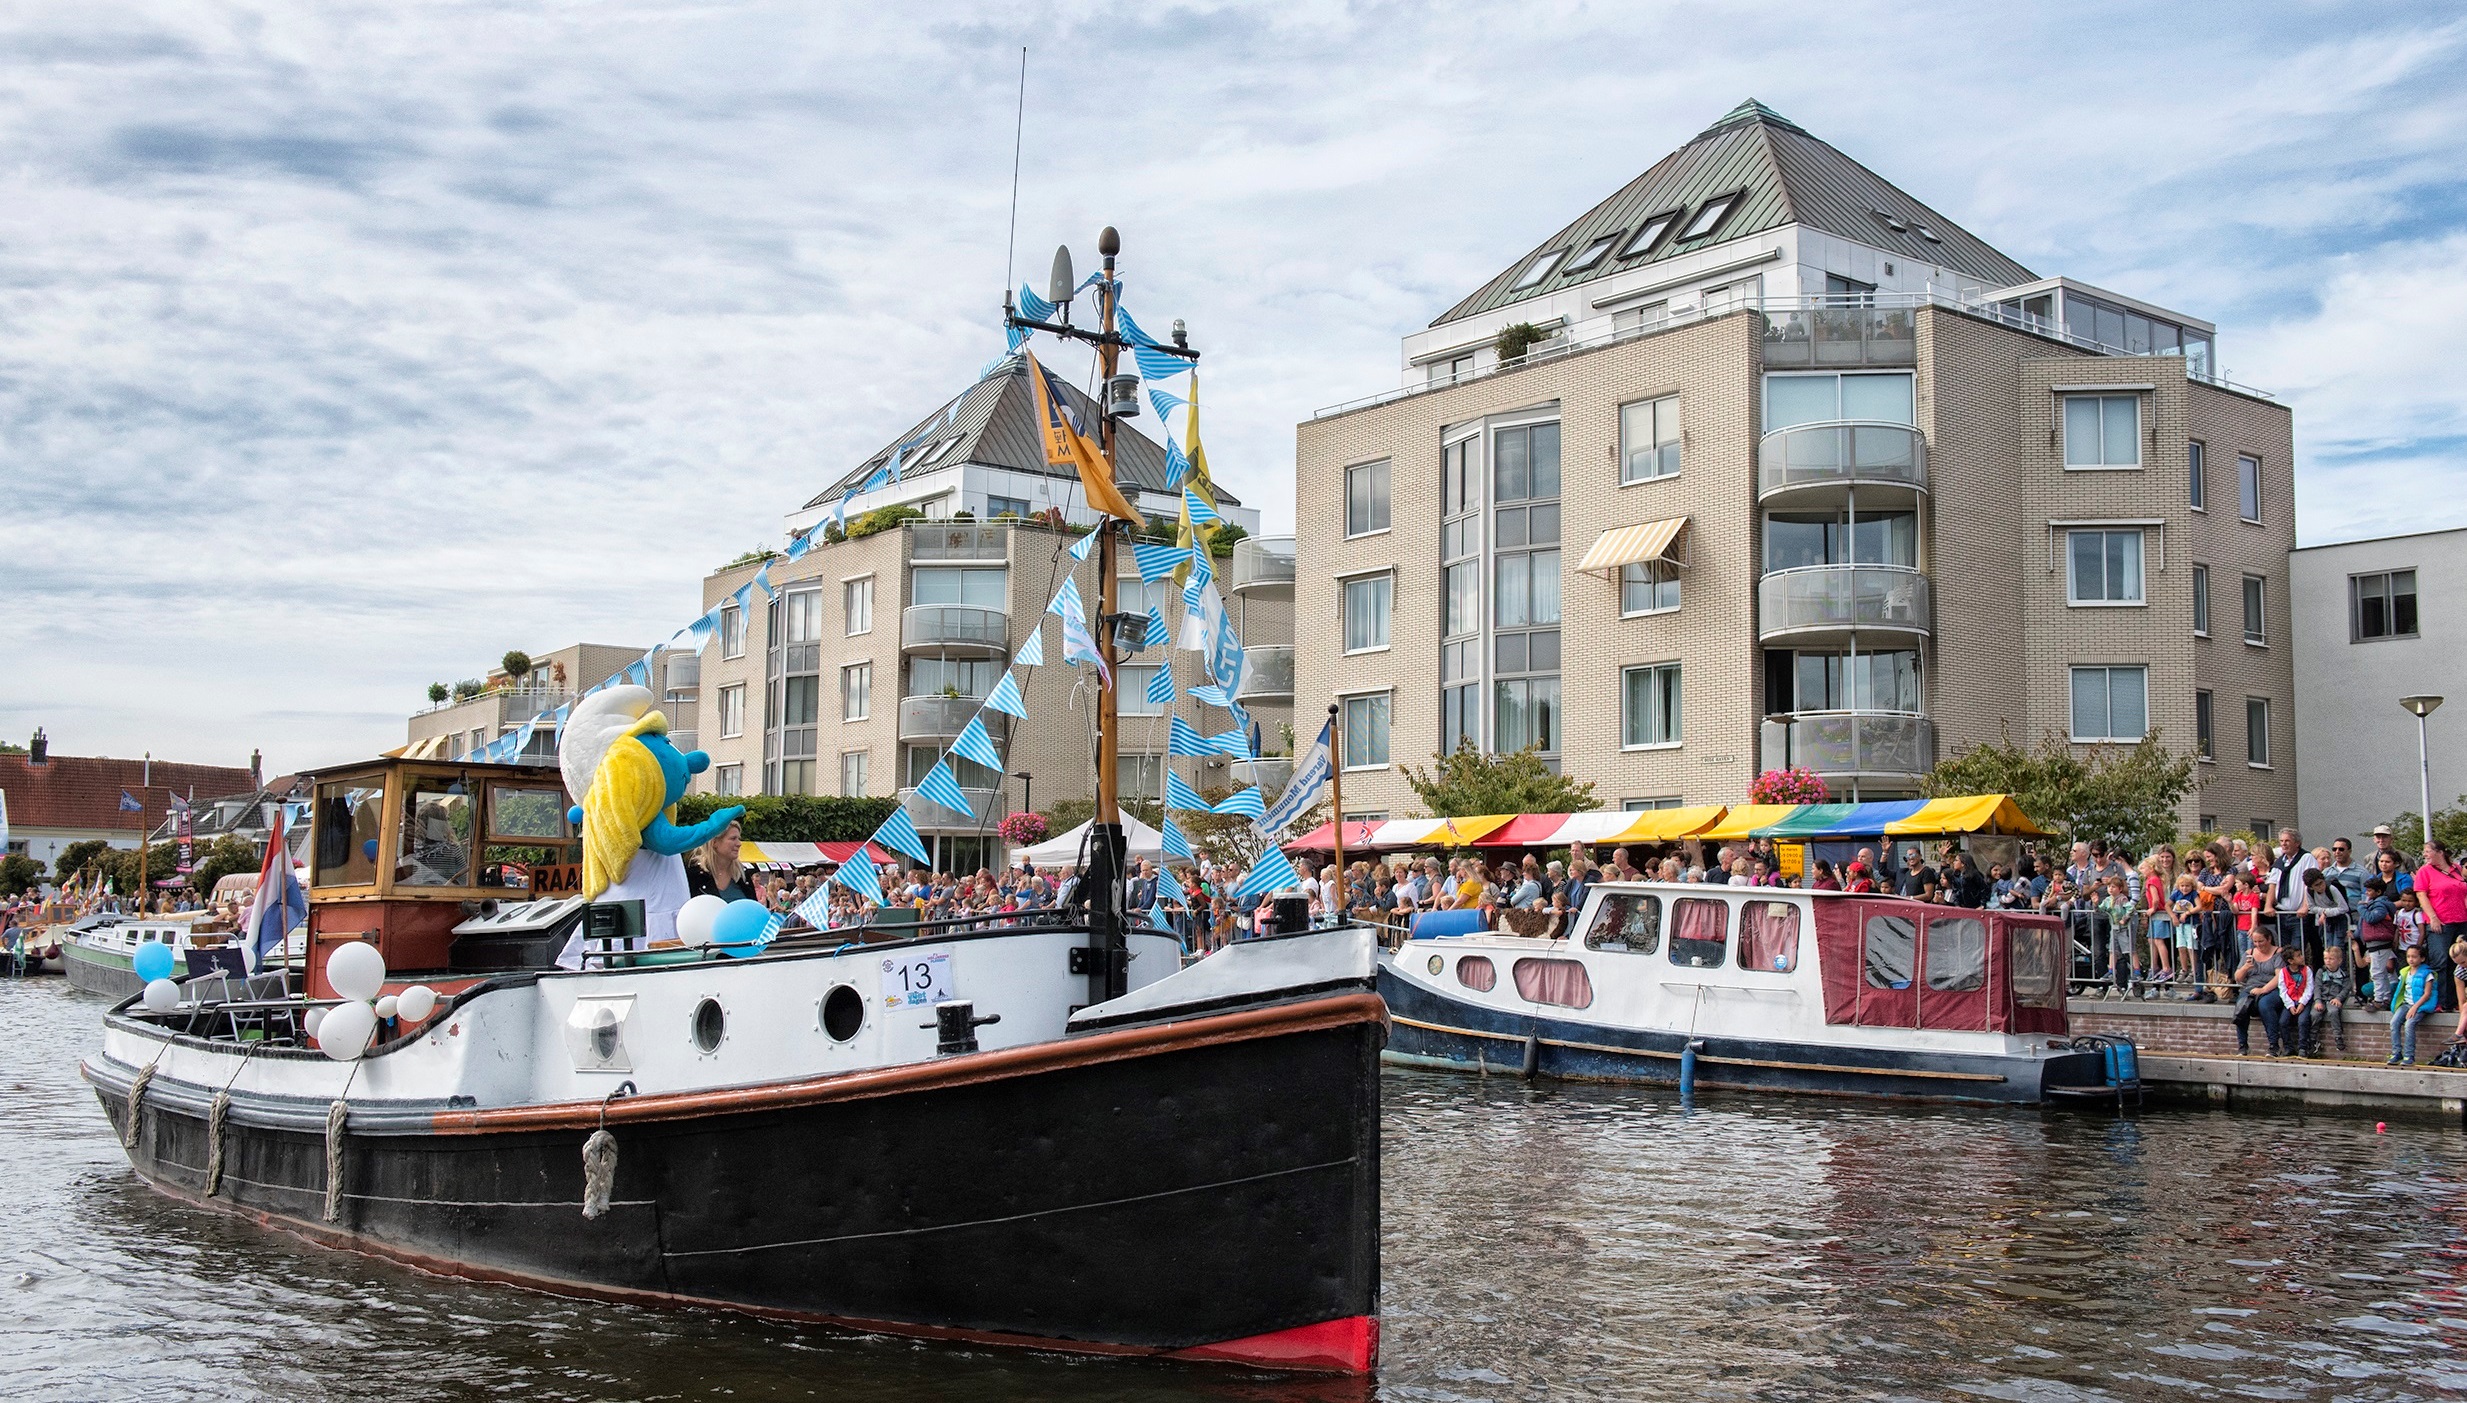 Berita terbaru dari Leidschendam-Voorburg – Kids Heroes Fun Cruise pada hari Sabtu 19 Agustus